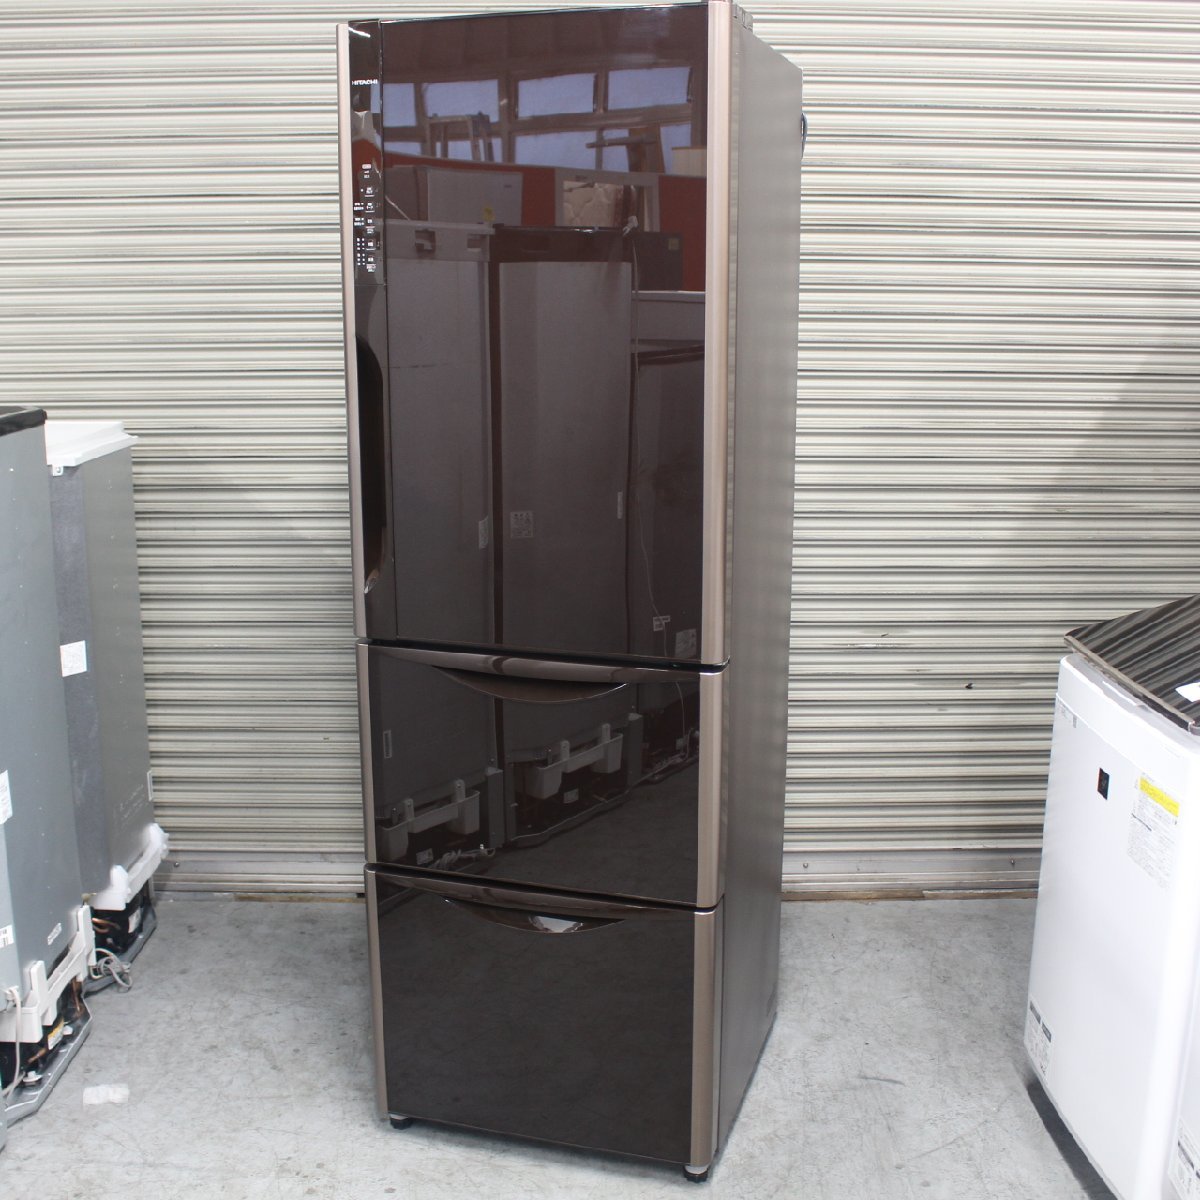 横浜市南区にて 日立 冷凍冷蔵庫 R-S3700FV(XT) 2015年製 を出張買取させて頂きました。